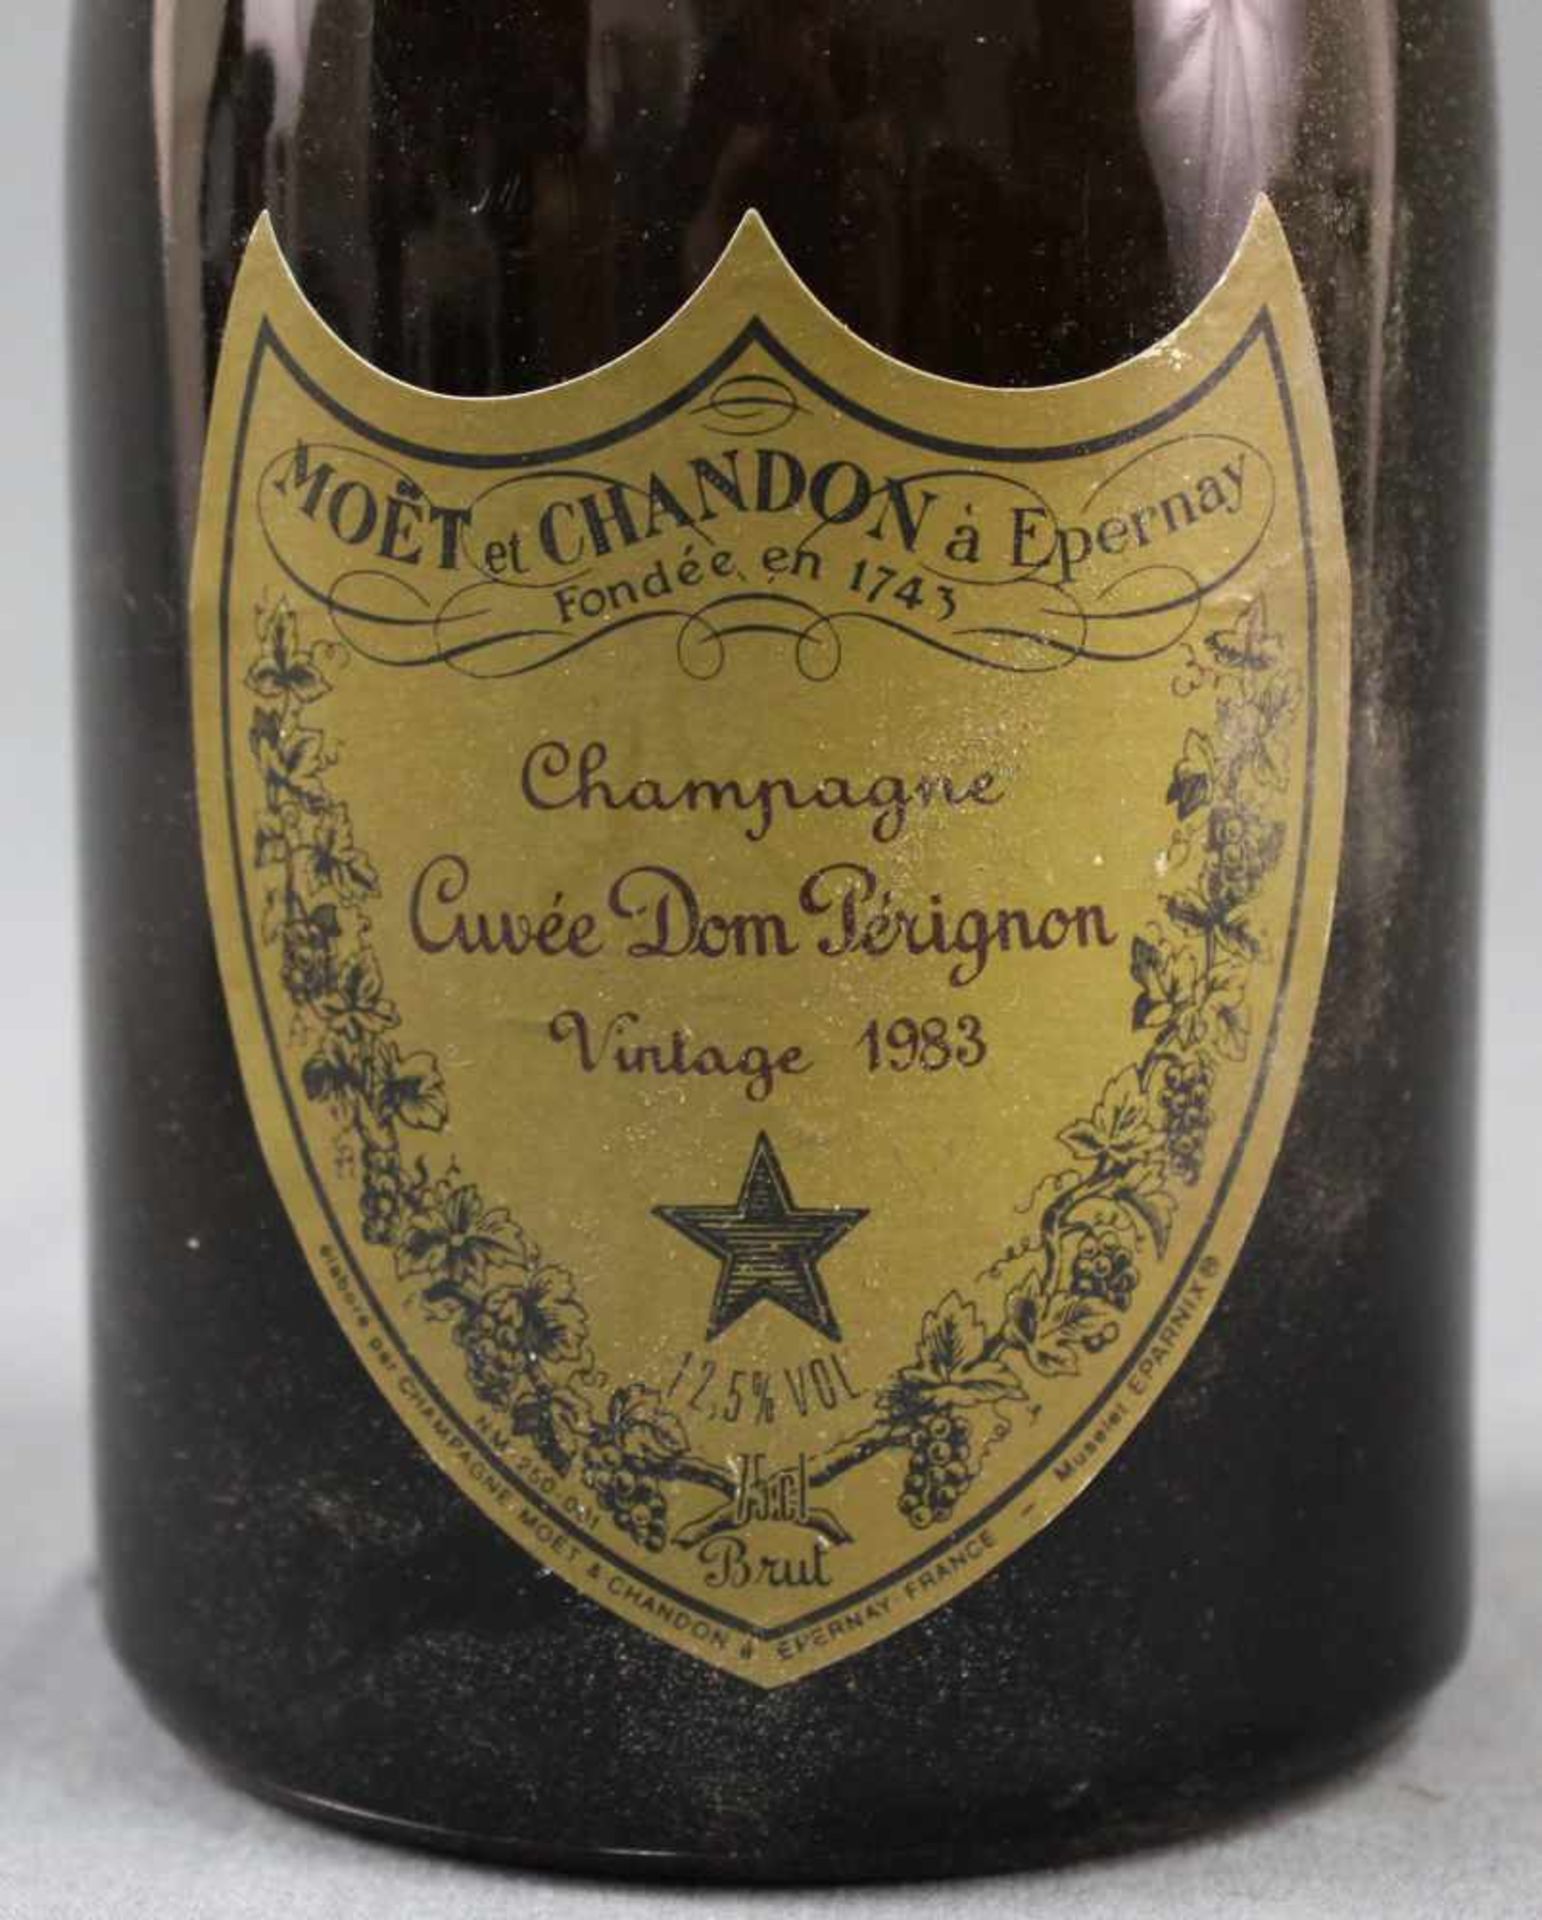 1983 Vintage. Cuvée Don Perignon. Champagne.1 ganze Flasche 12,5% vol. 75 cl. Moet et Chandon à - Bild 5 aus 9